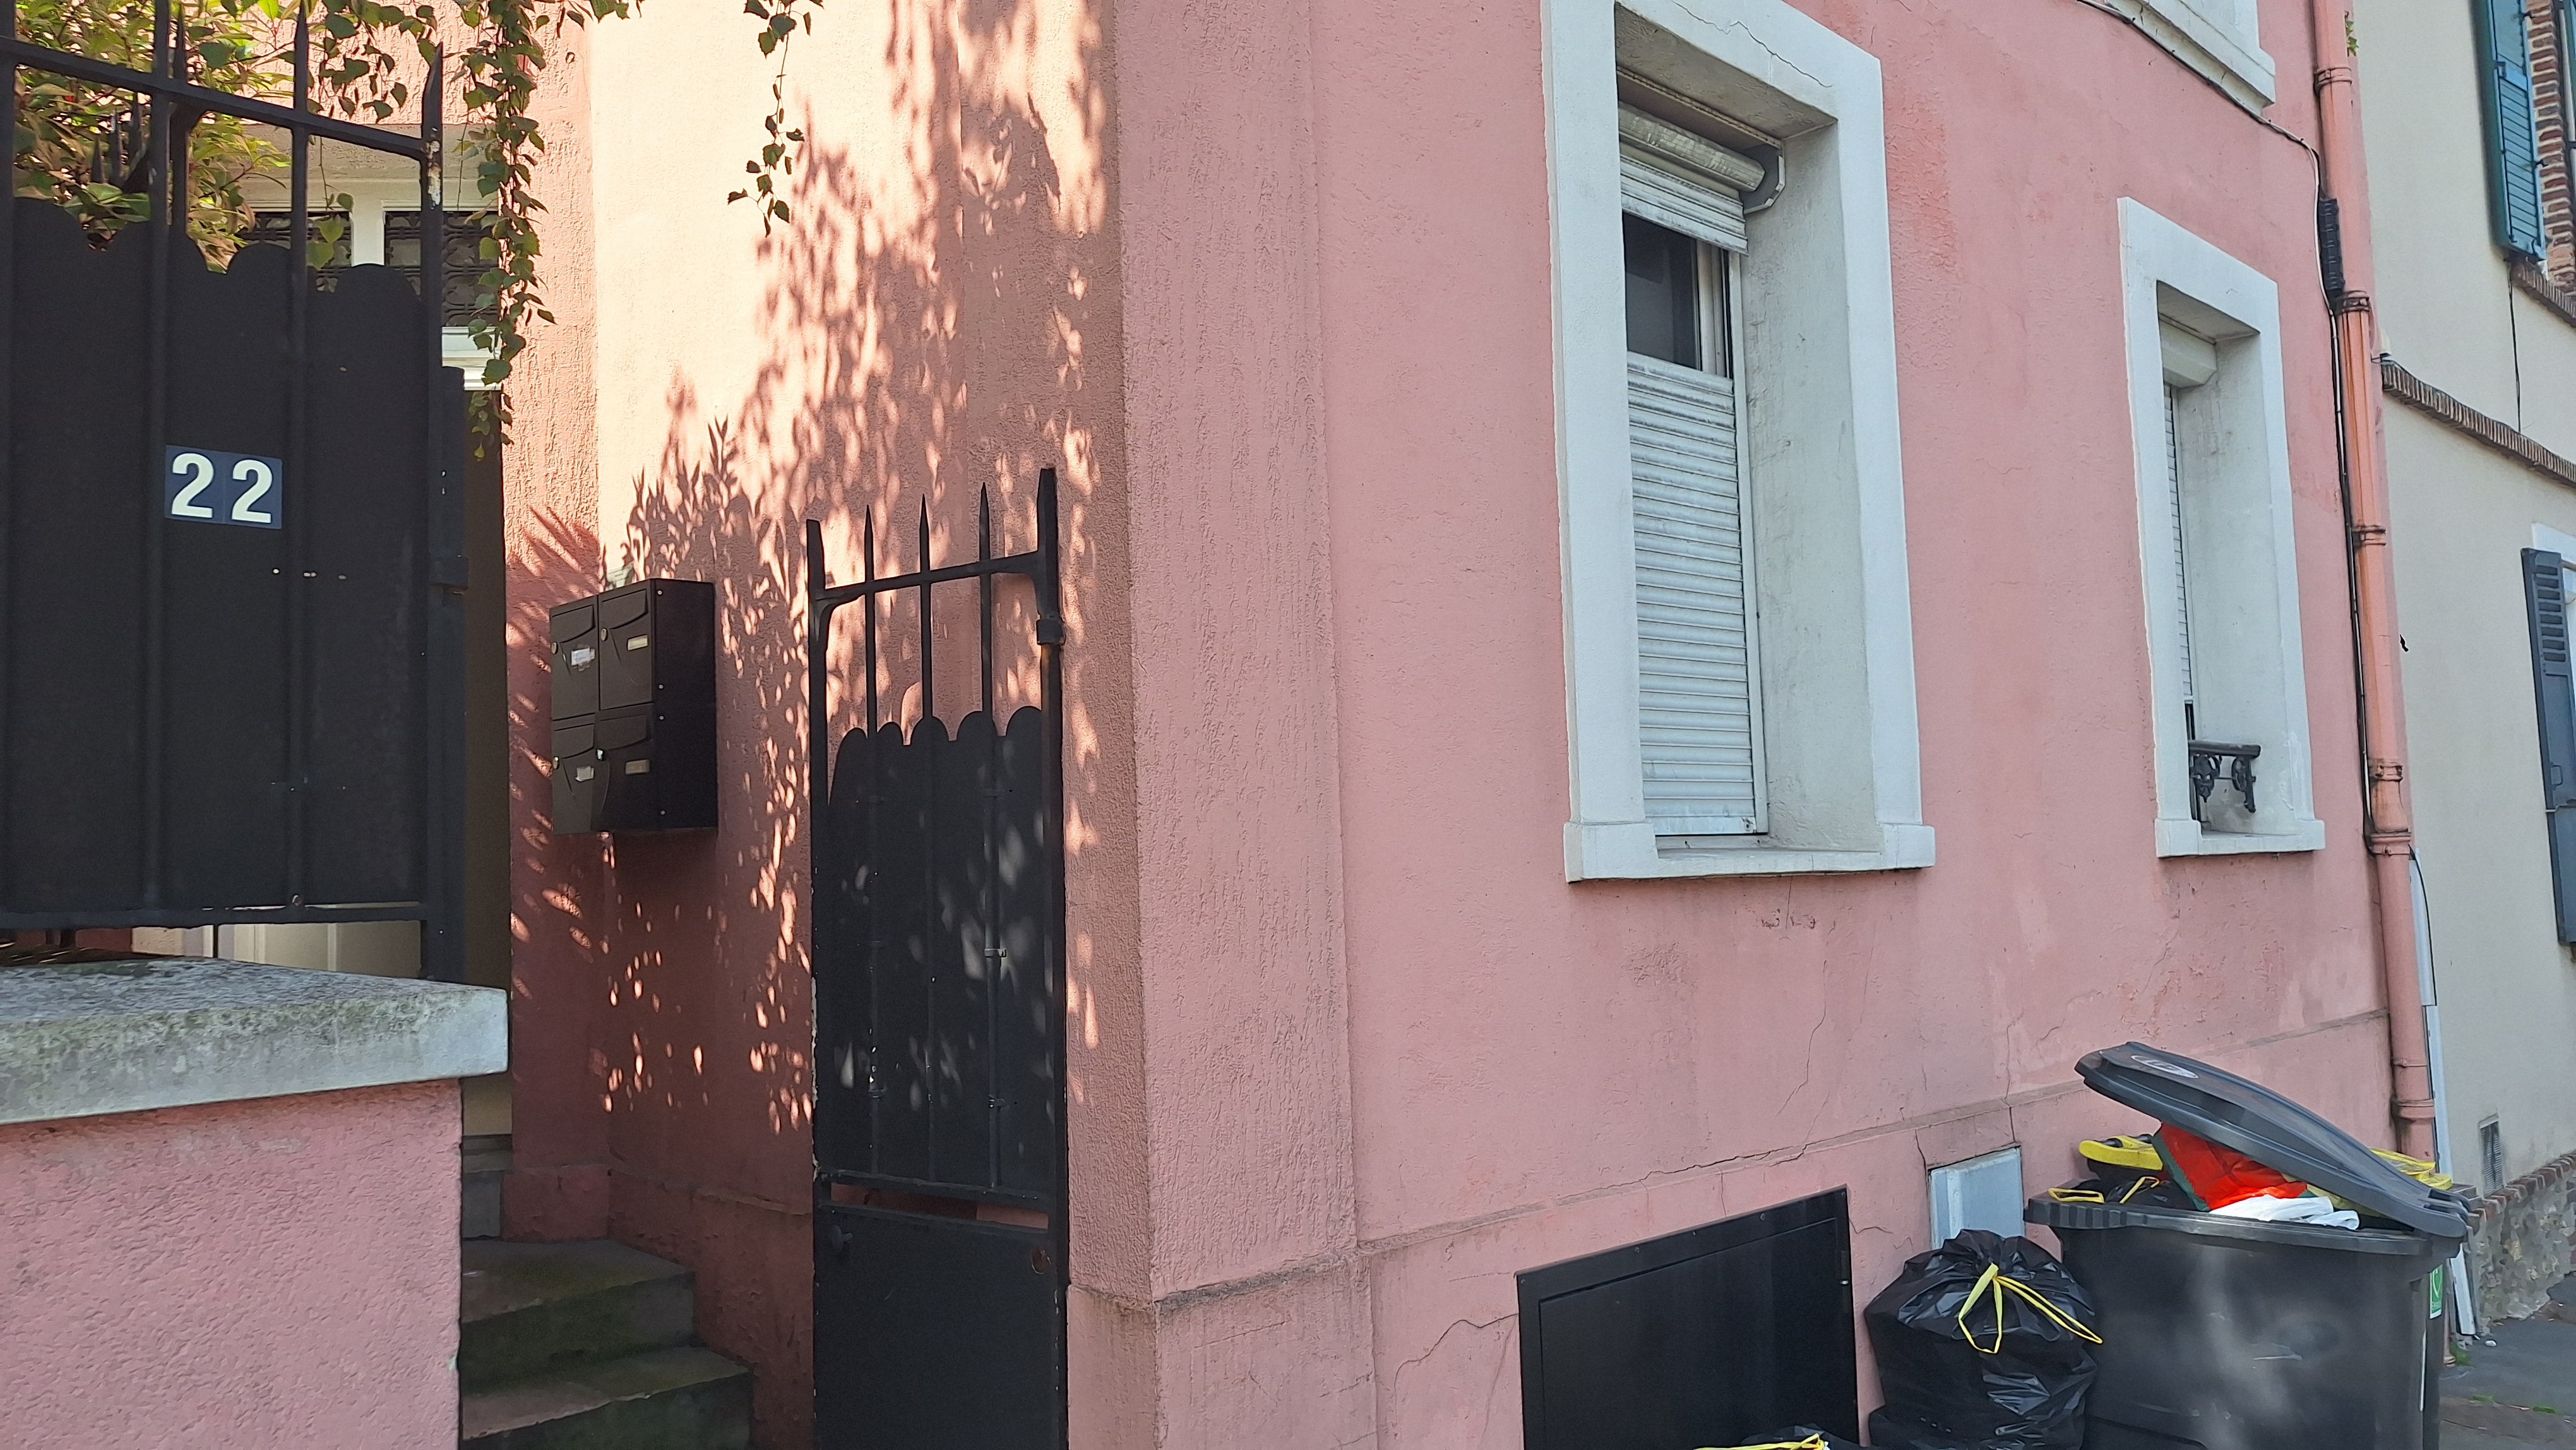 Montmorency (Val-d'Oise), lundi 3 juin. C'est dans cet appartement du rez-de-chaussée, avenue Clemenceau, que les produits chimiques suspects ont été découverts samedi 1er juin au soir. LP/Frédéric Naizot